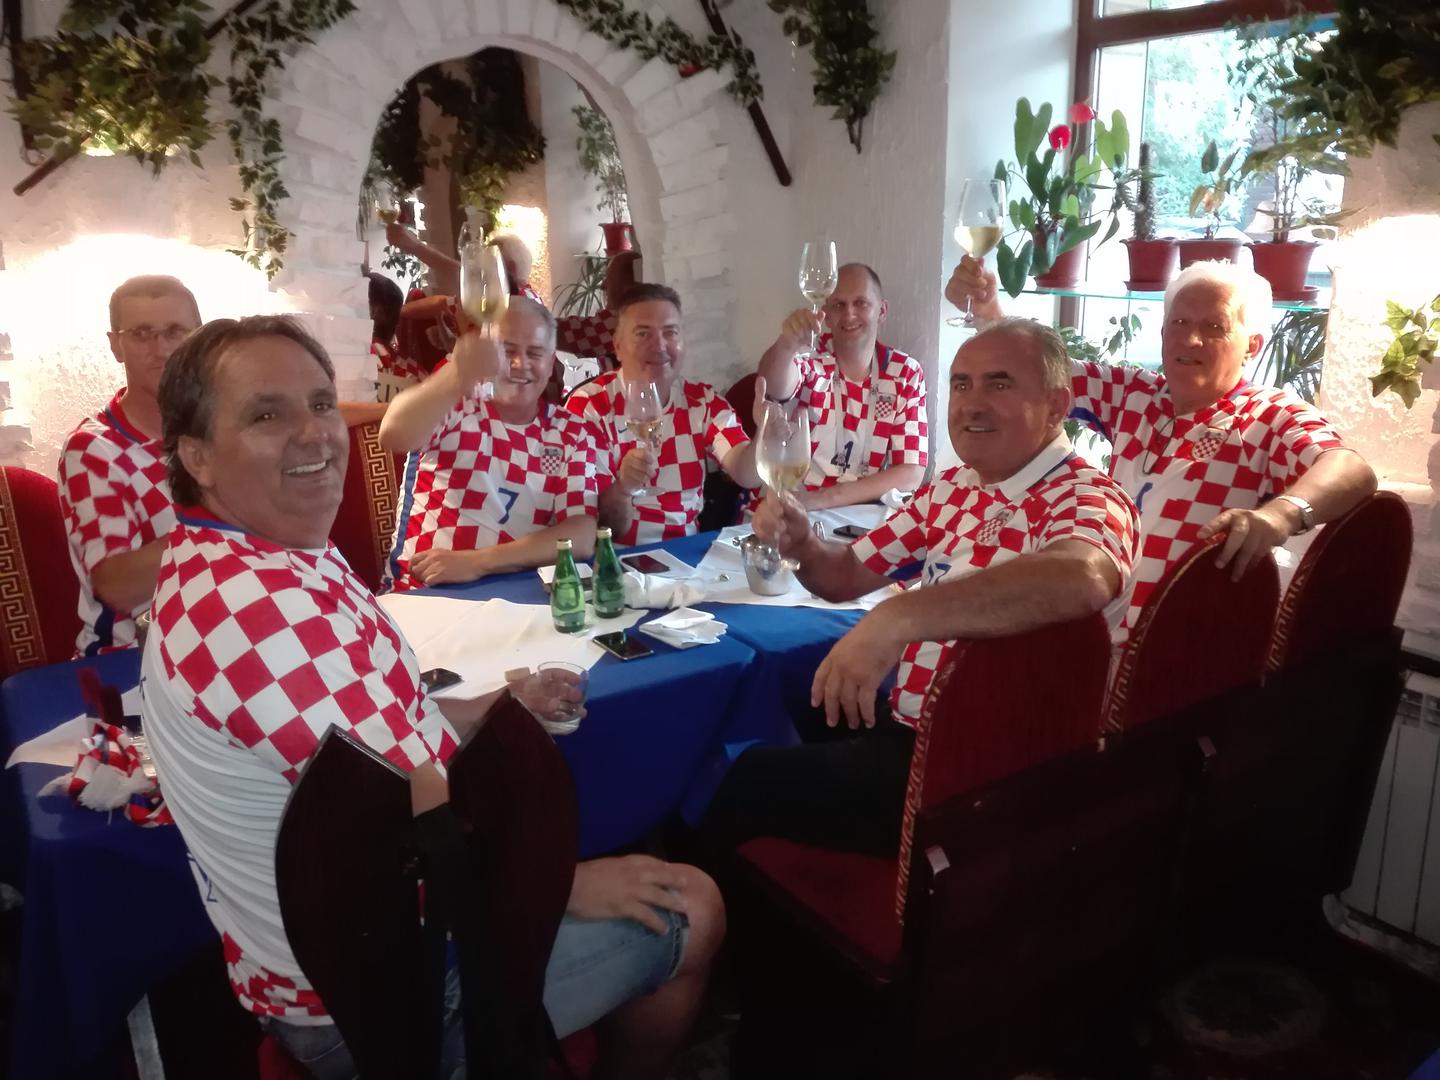 Tijekom današnjeg dana mnogi hrvatski navijači pohodili su u Rostovu poznati restoran 'Drago' srpskog vlasnika Drage Rakanovića, koji je rodom iz Goražda u BiH. Zatekli su se tu i Islanđani, Meksikanci i ostali.

